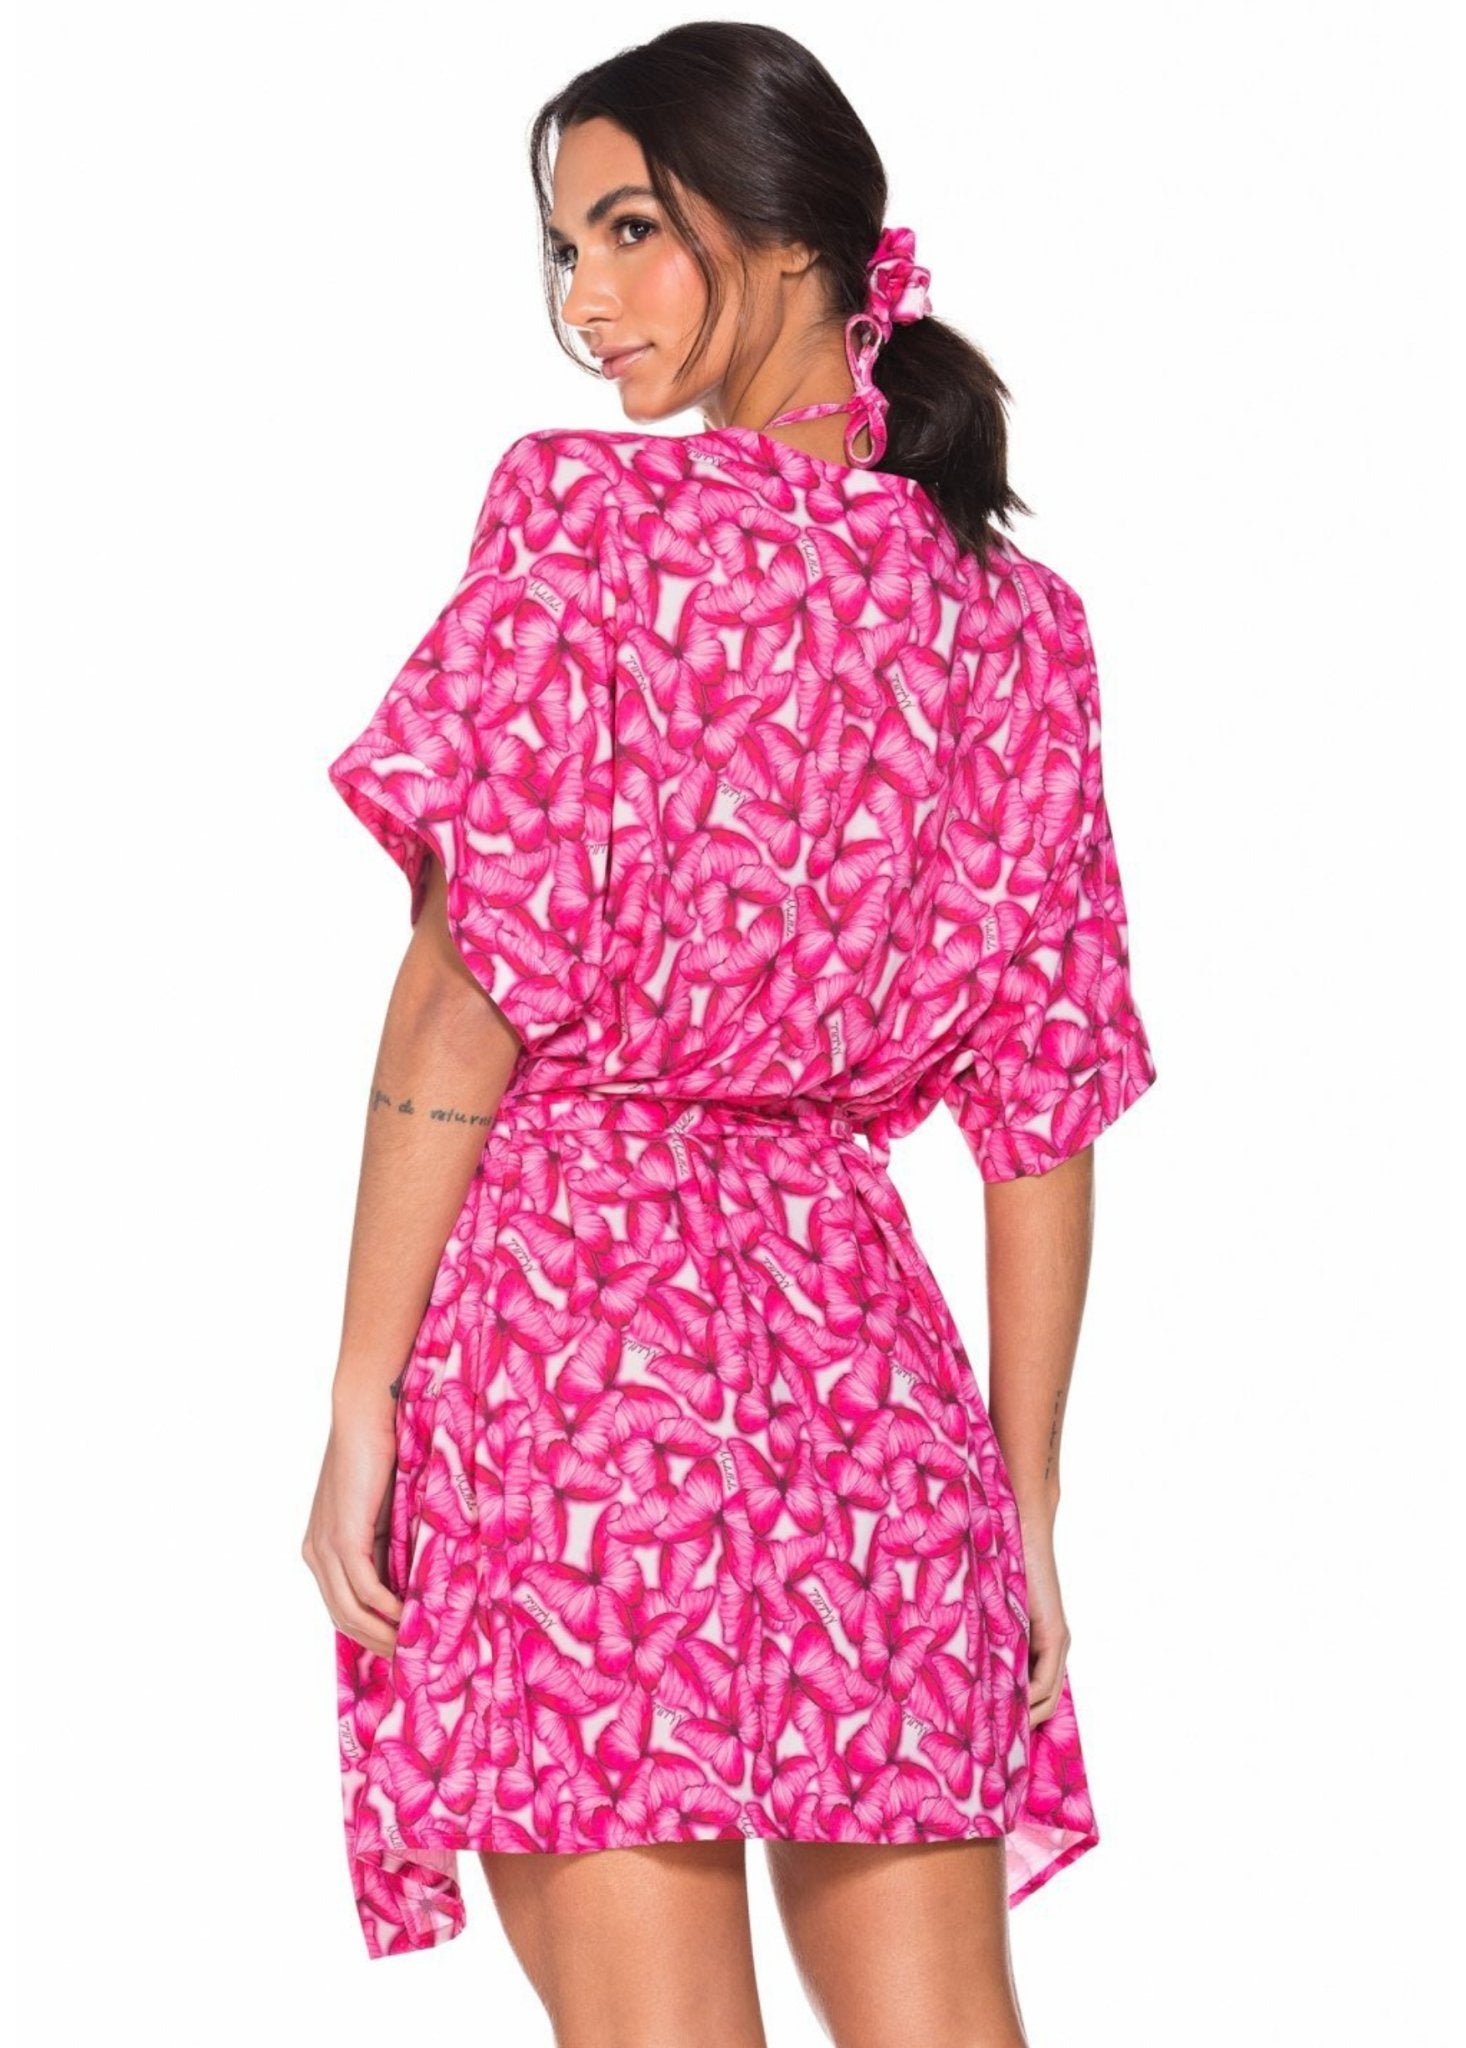 Kimono Com Cinto Removível Borboleta Pink 196 - MADALLOLA